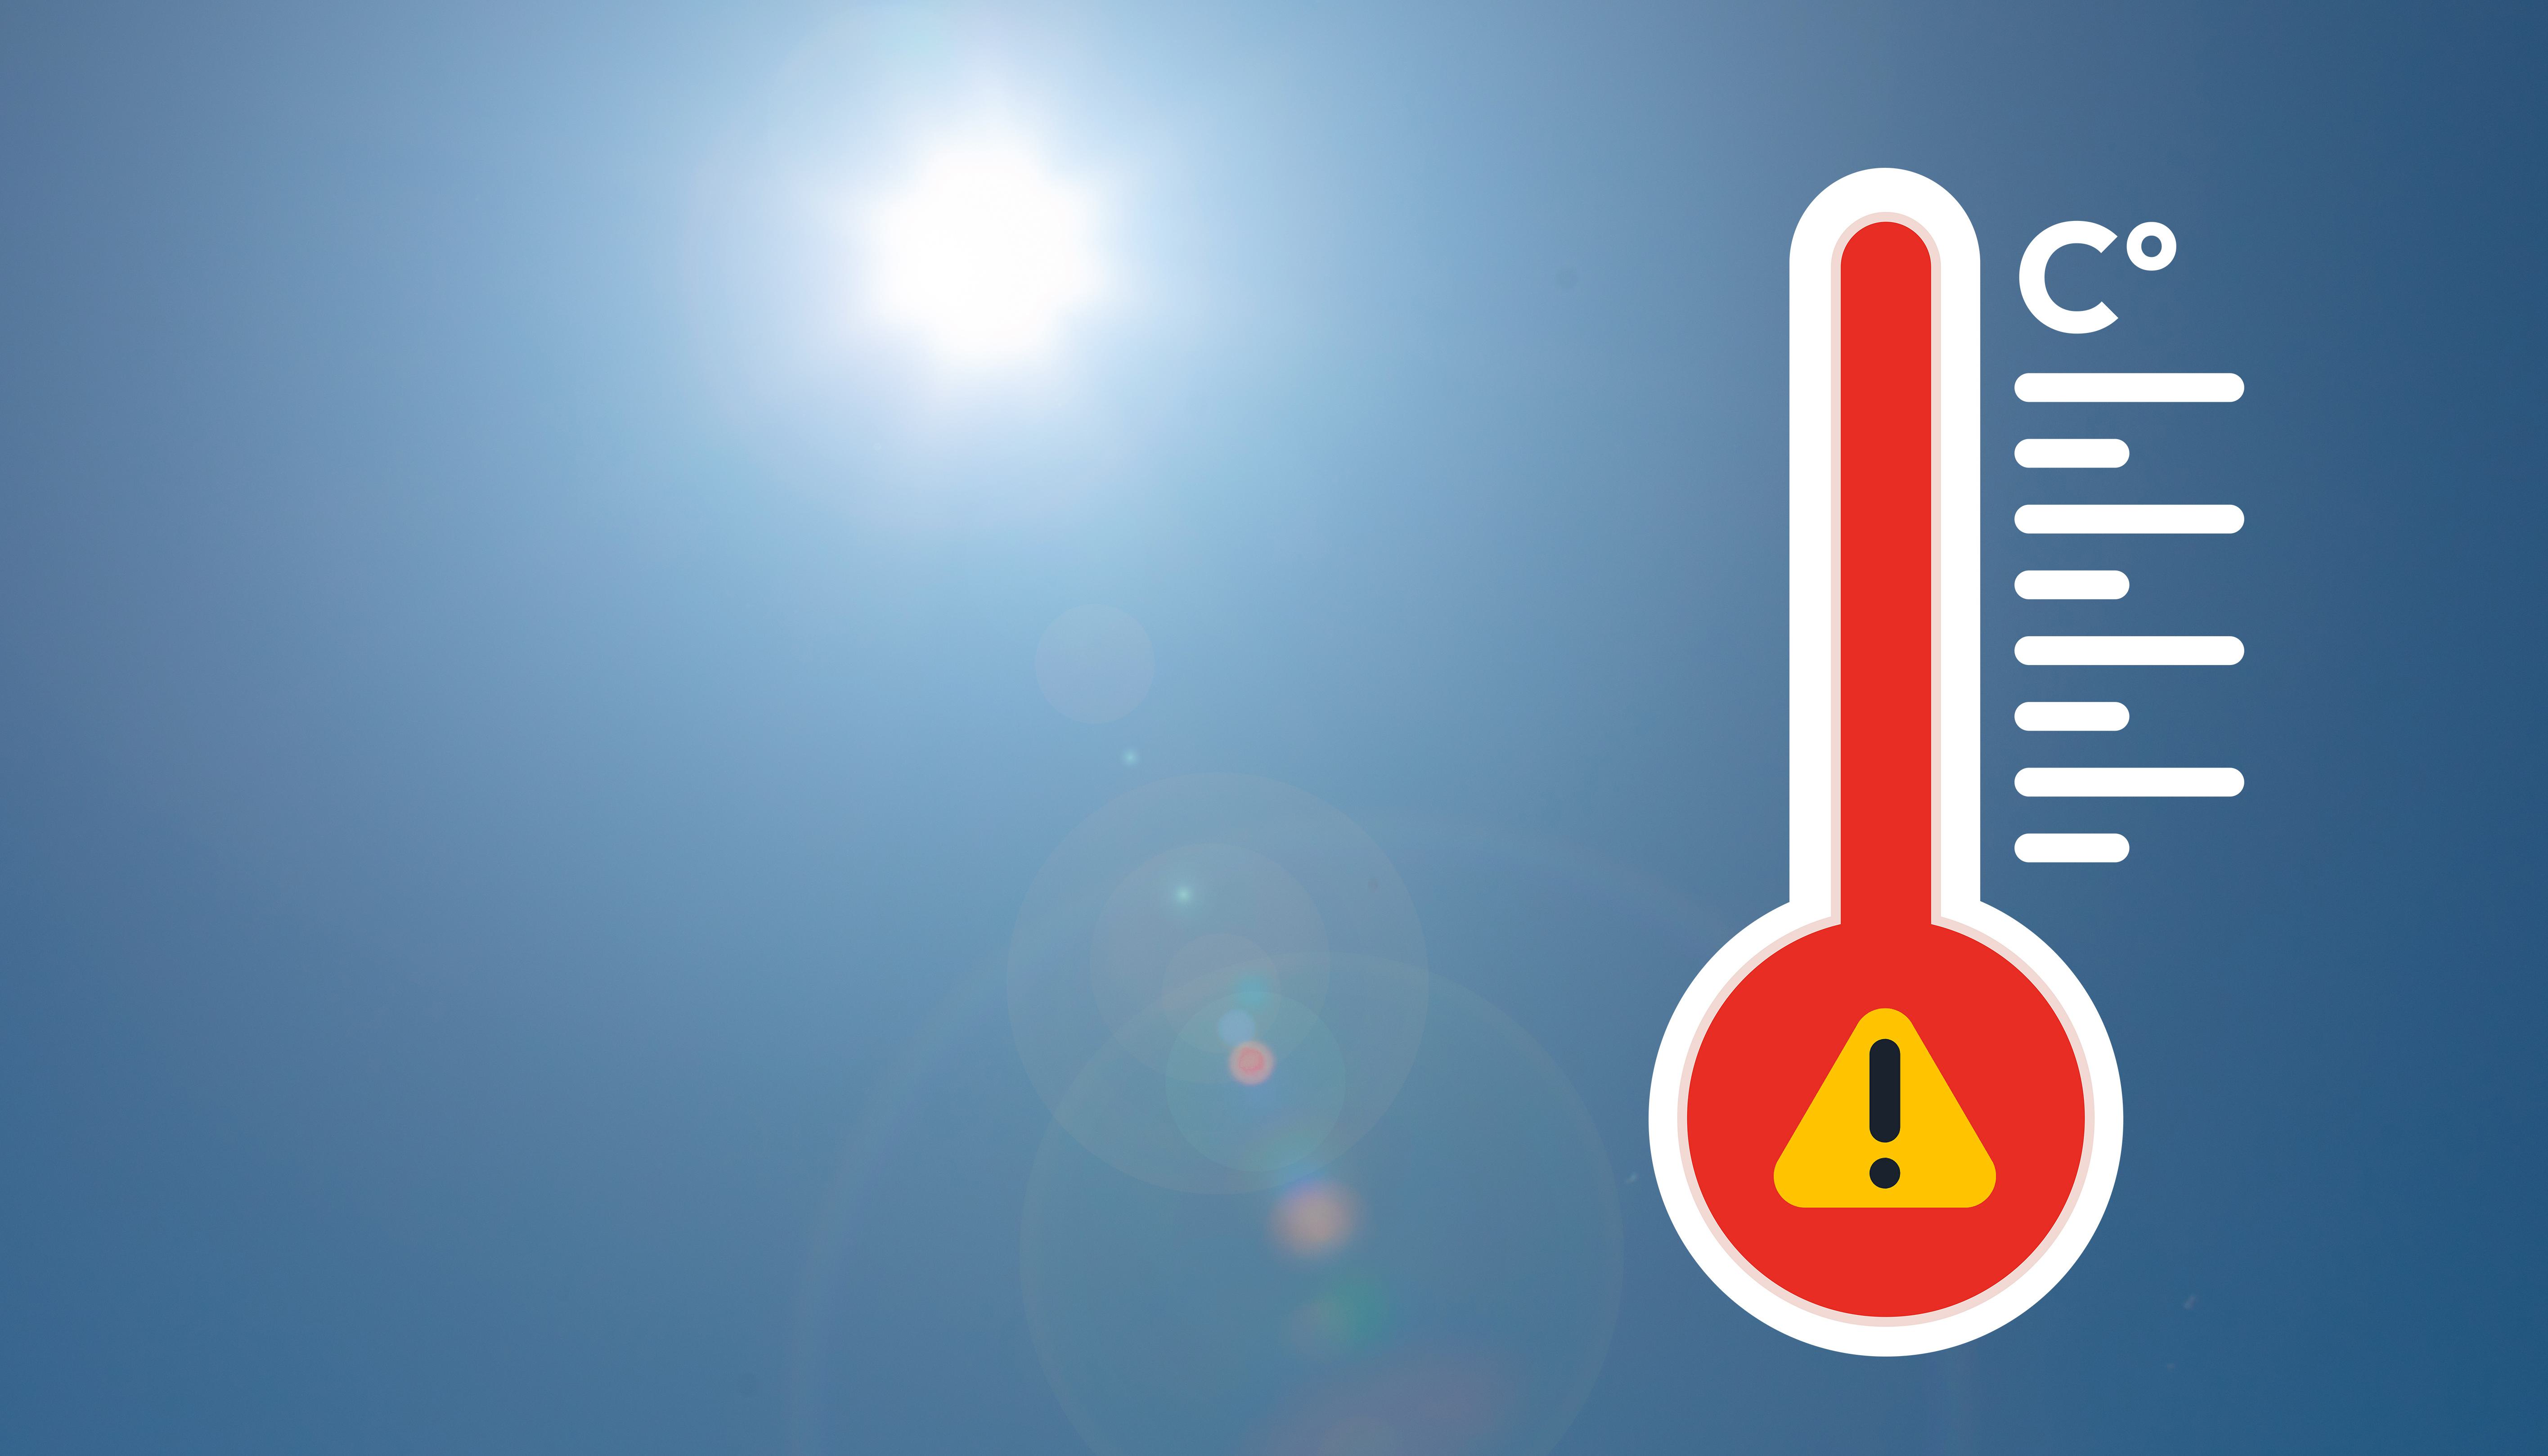 Travail par fortes chaleurs : l’OPPBTP publie un guide de recommandations pour agir en prévention